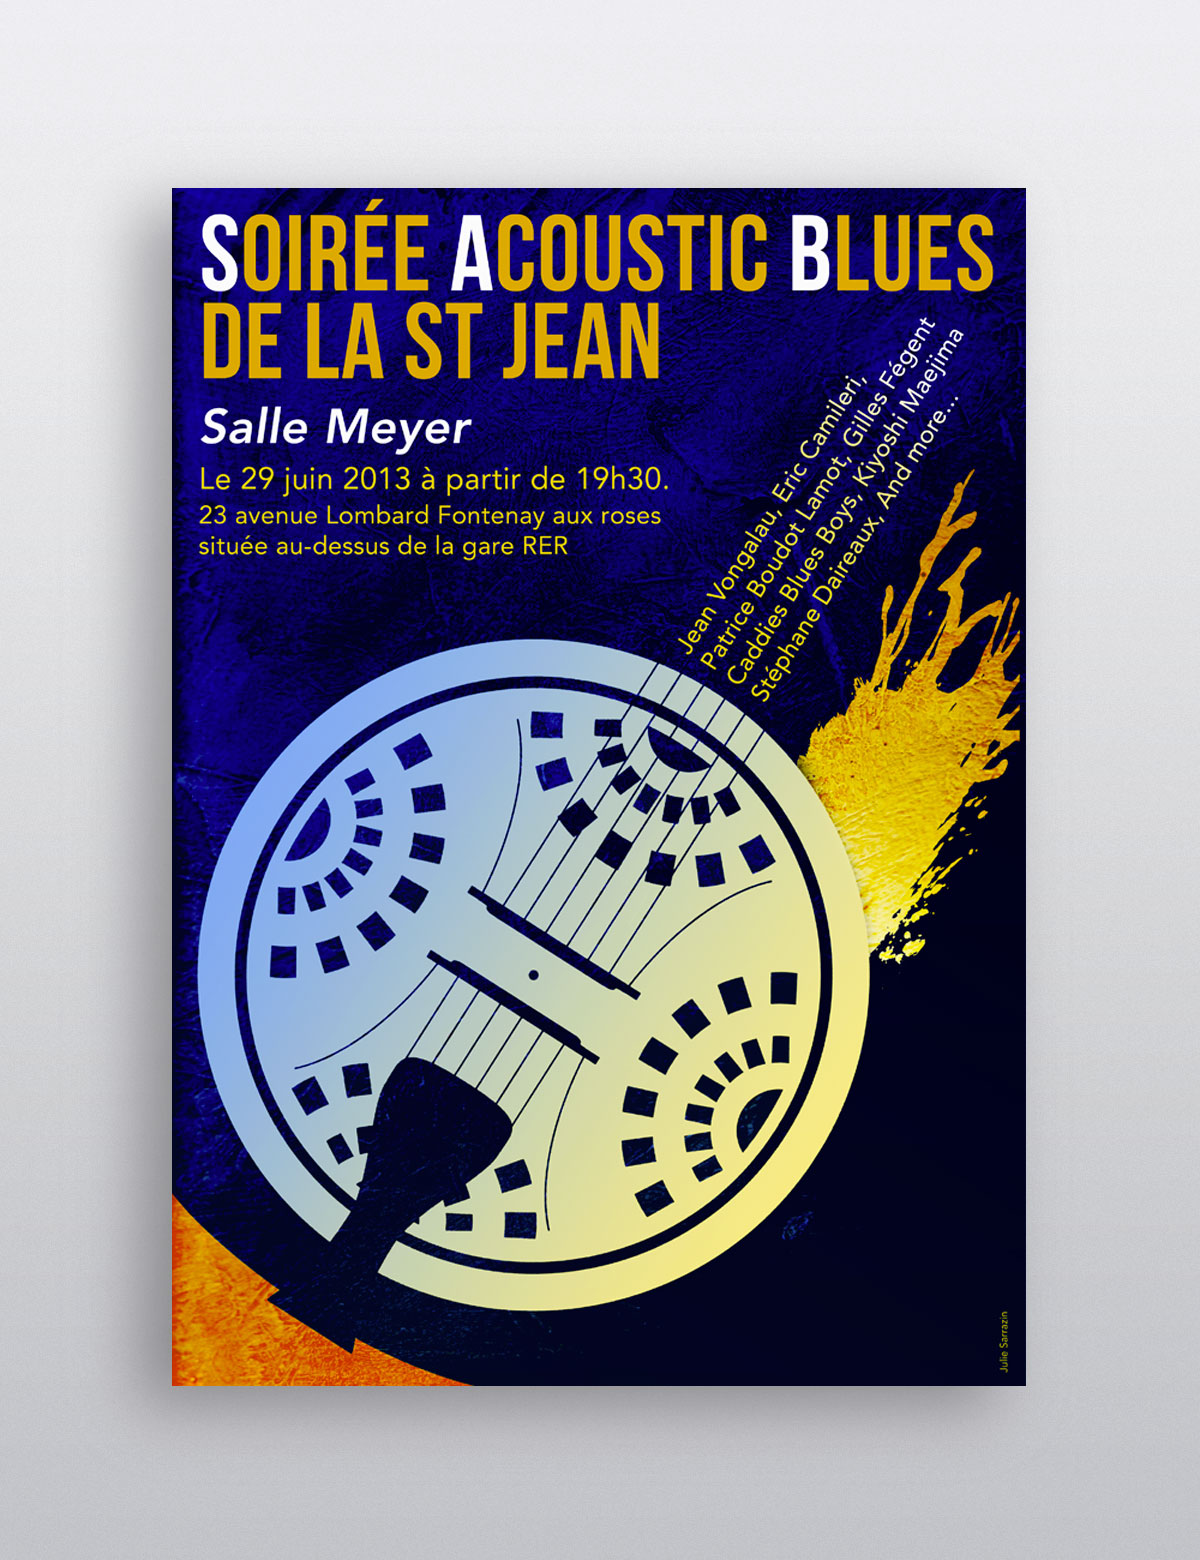 Soire Acoustic blues